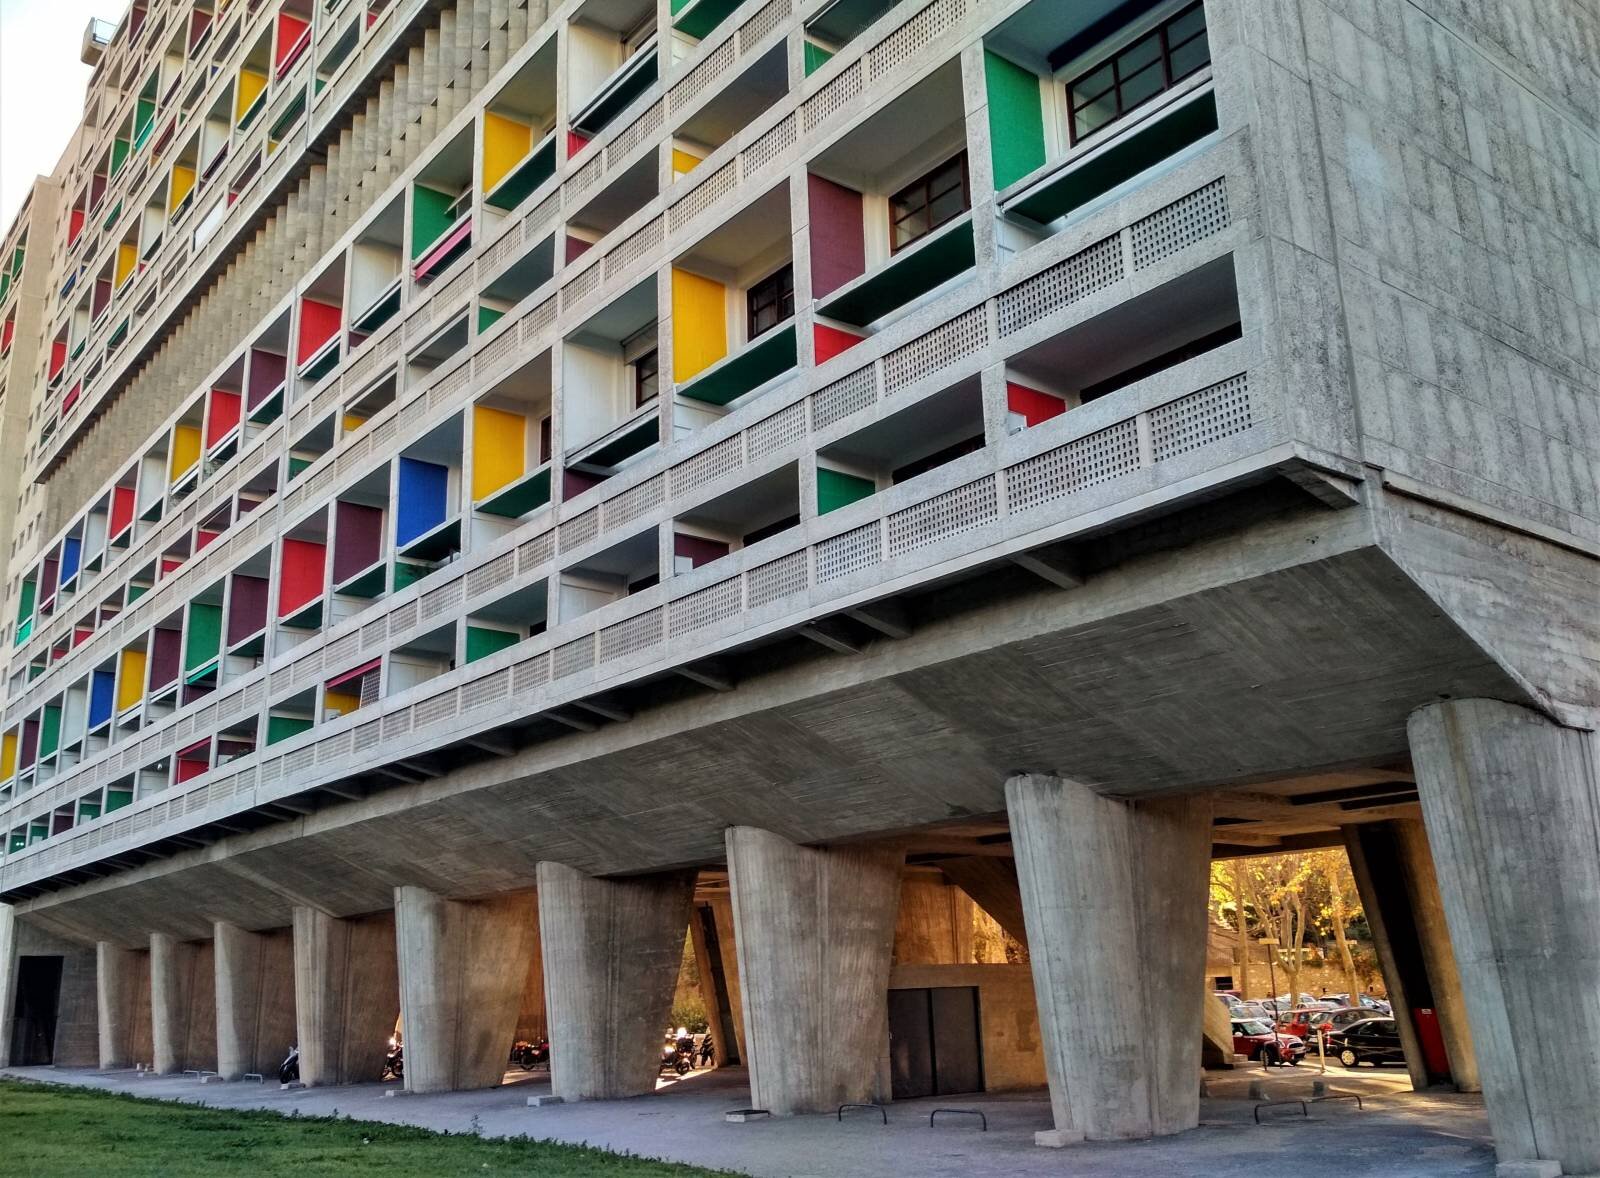 Détail de la Cité radieuse de Le Corbusier.